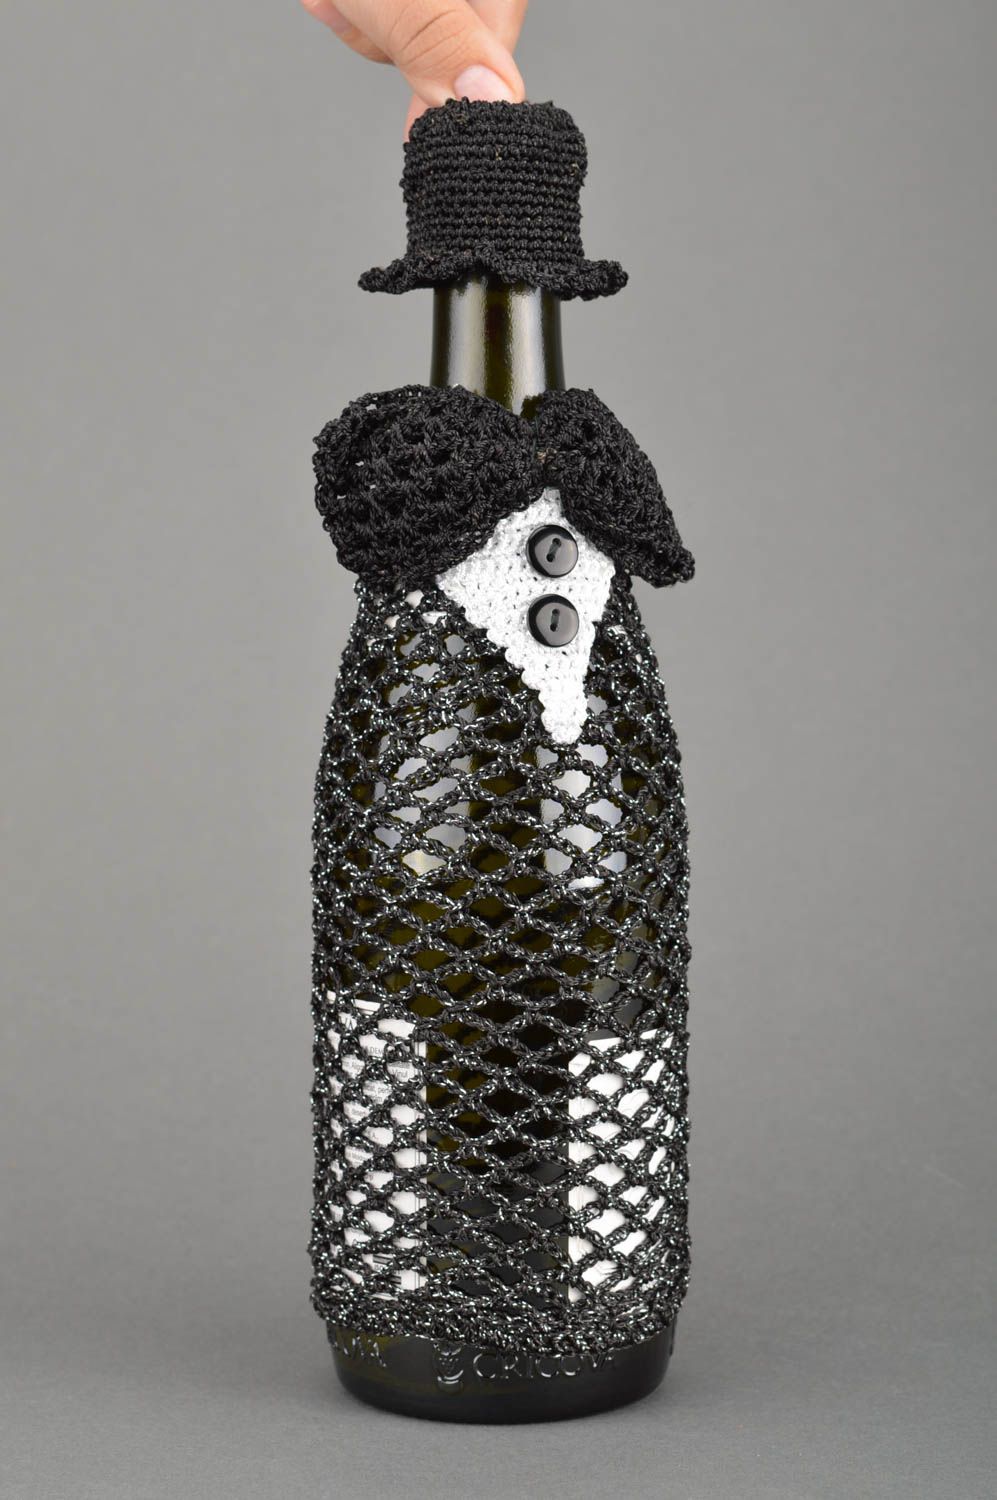 Handmade designer decorative bottle cozy crocheted black acrylic jacket and hat photo 3